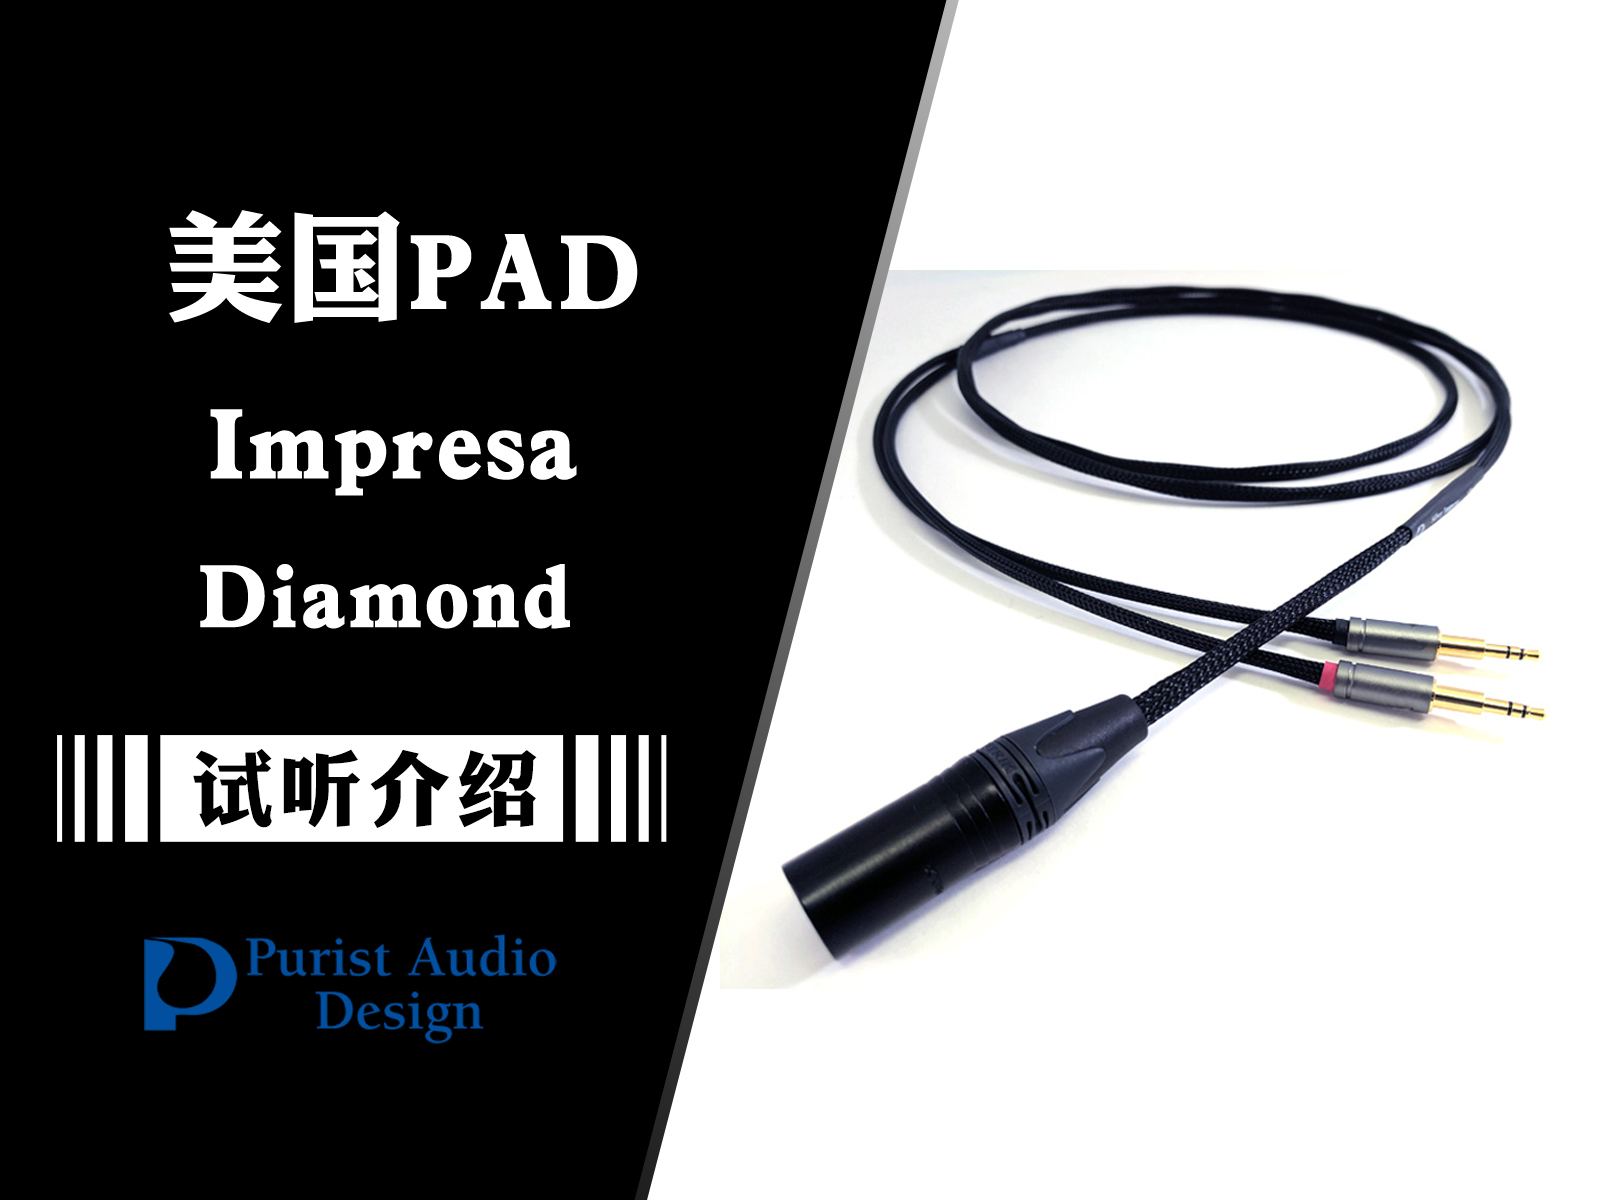 更上一层楼——全新PAD Impresa Diamond耳机升级线